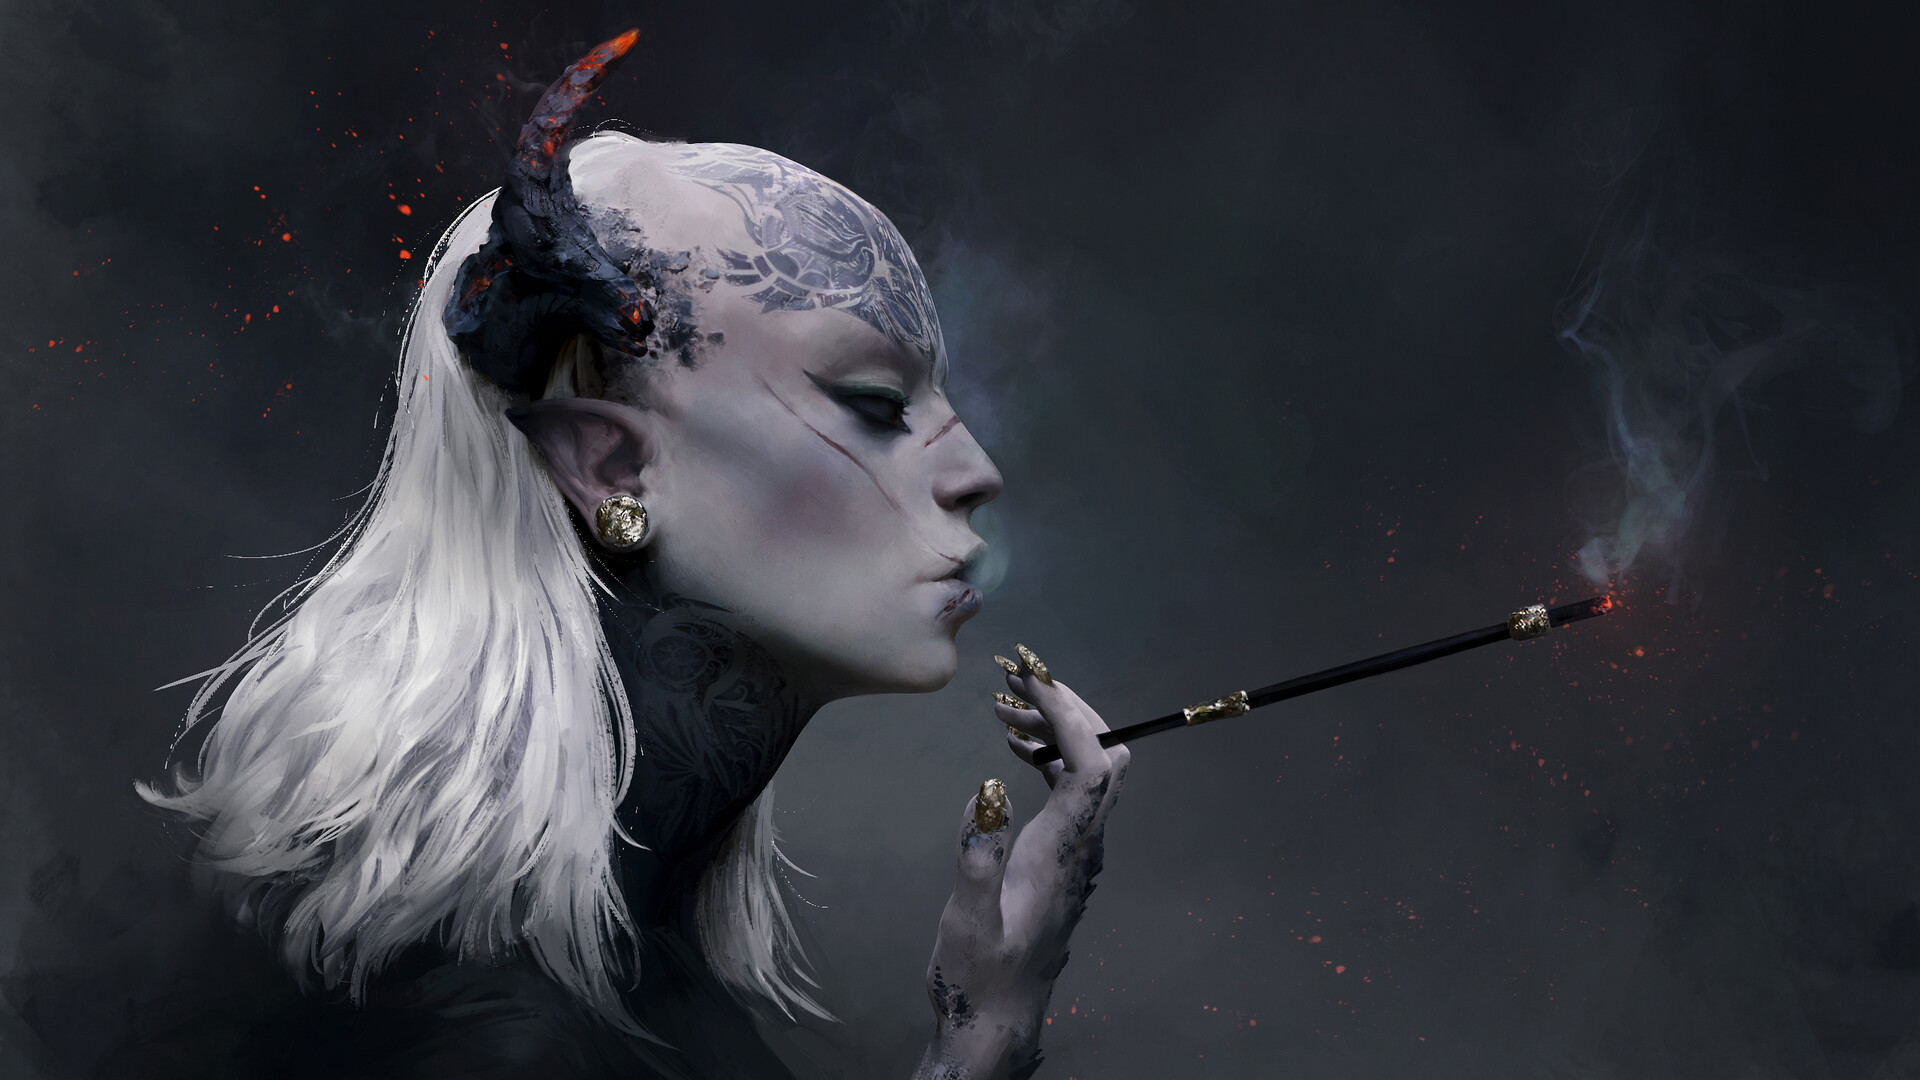 Women Artwork Digital Art Fantasy Art Fantasy Girl Face Horns Profile Smoking Inked Girls White Hair 1920x1080